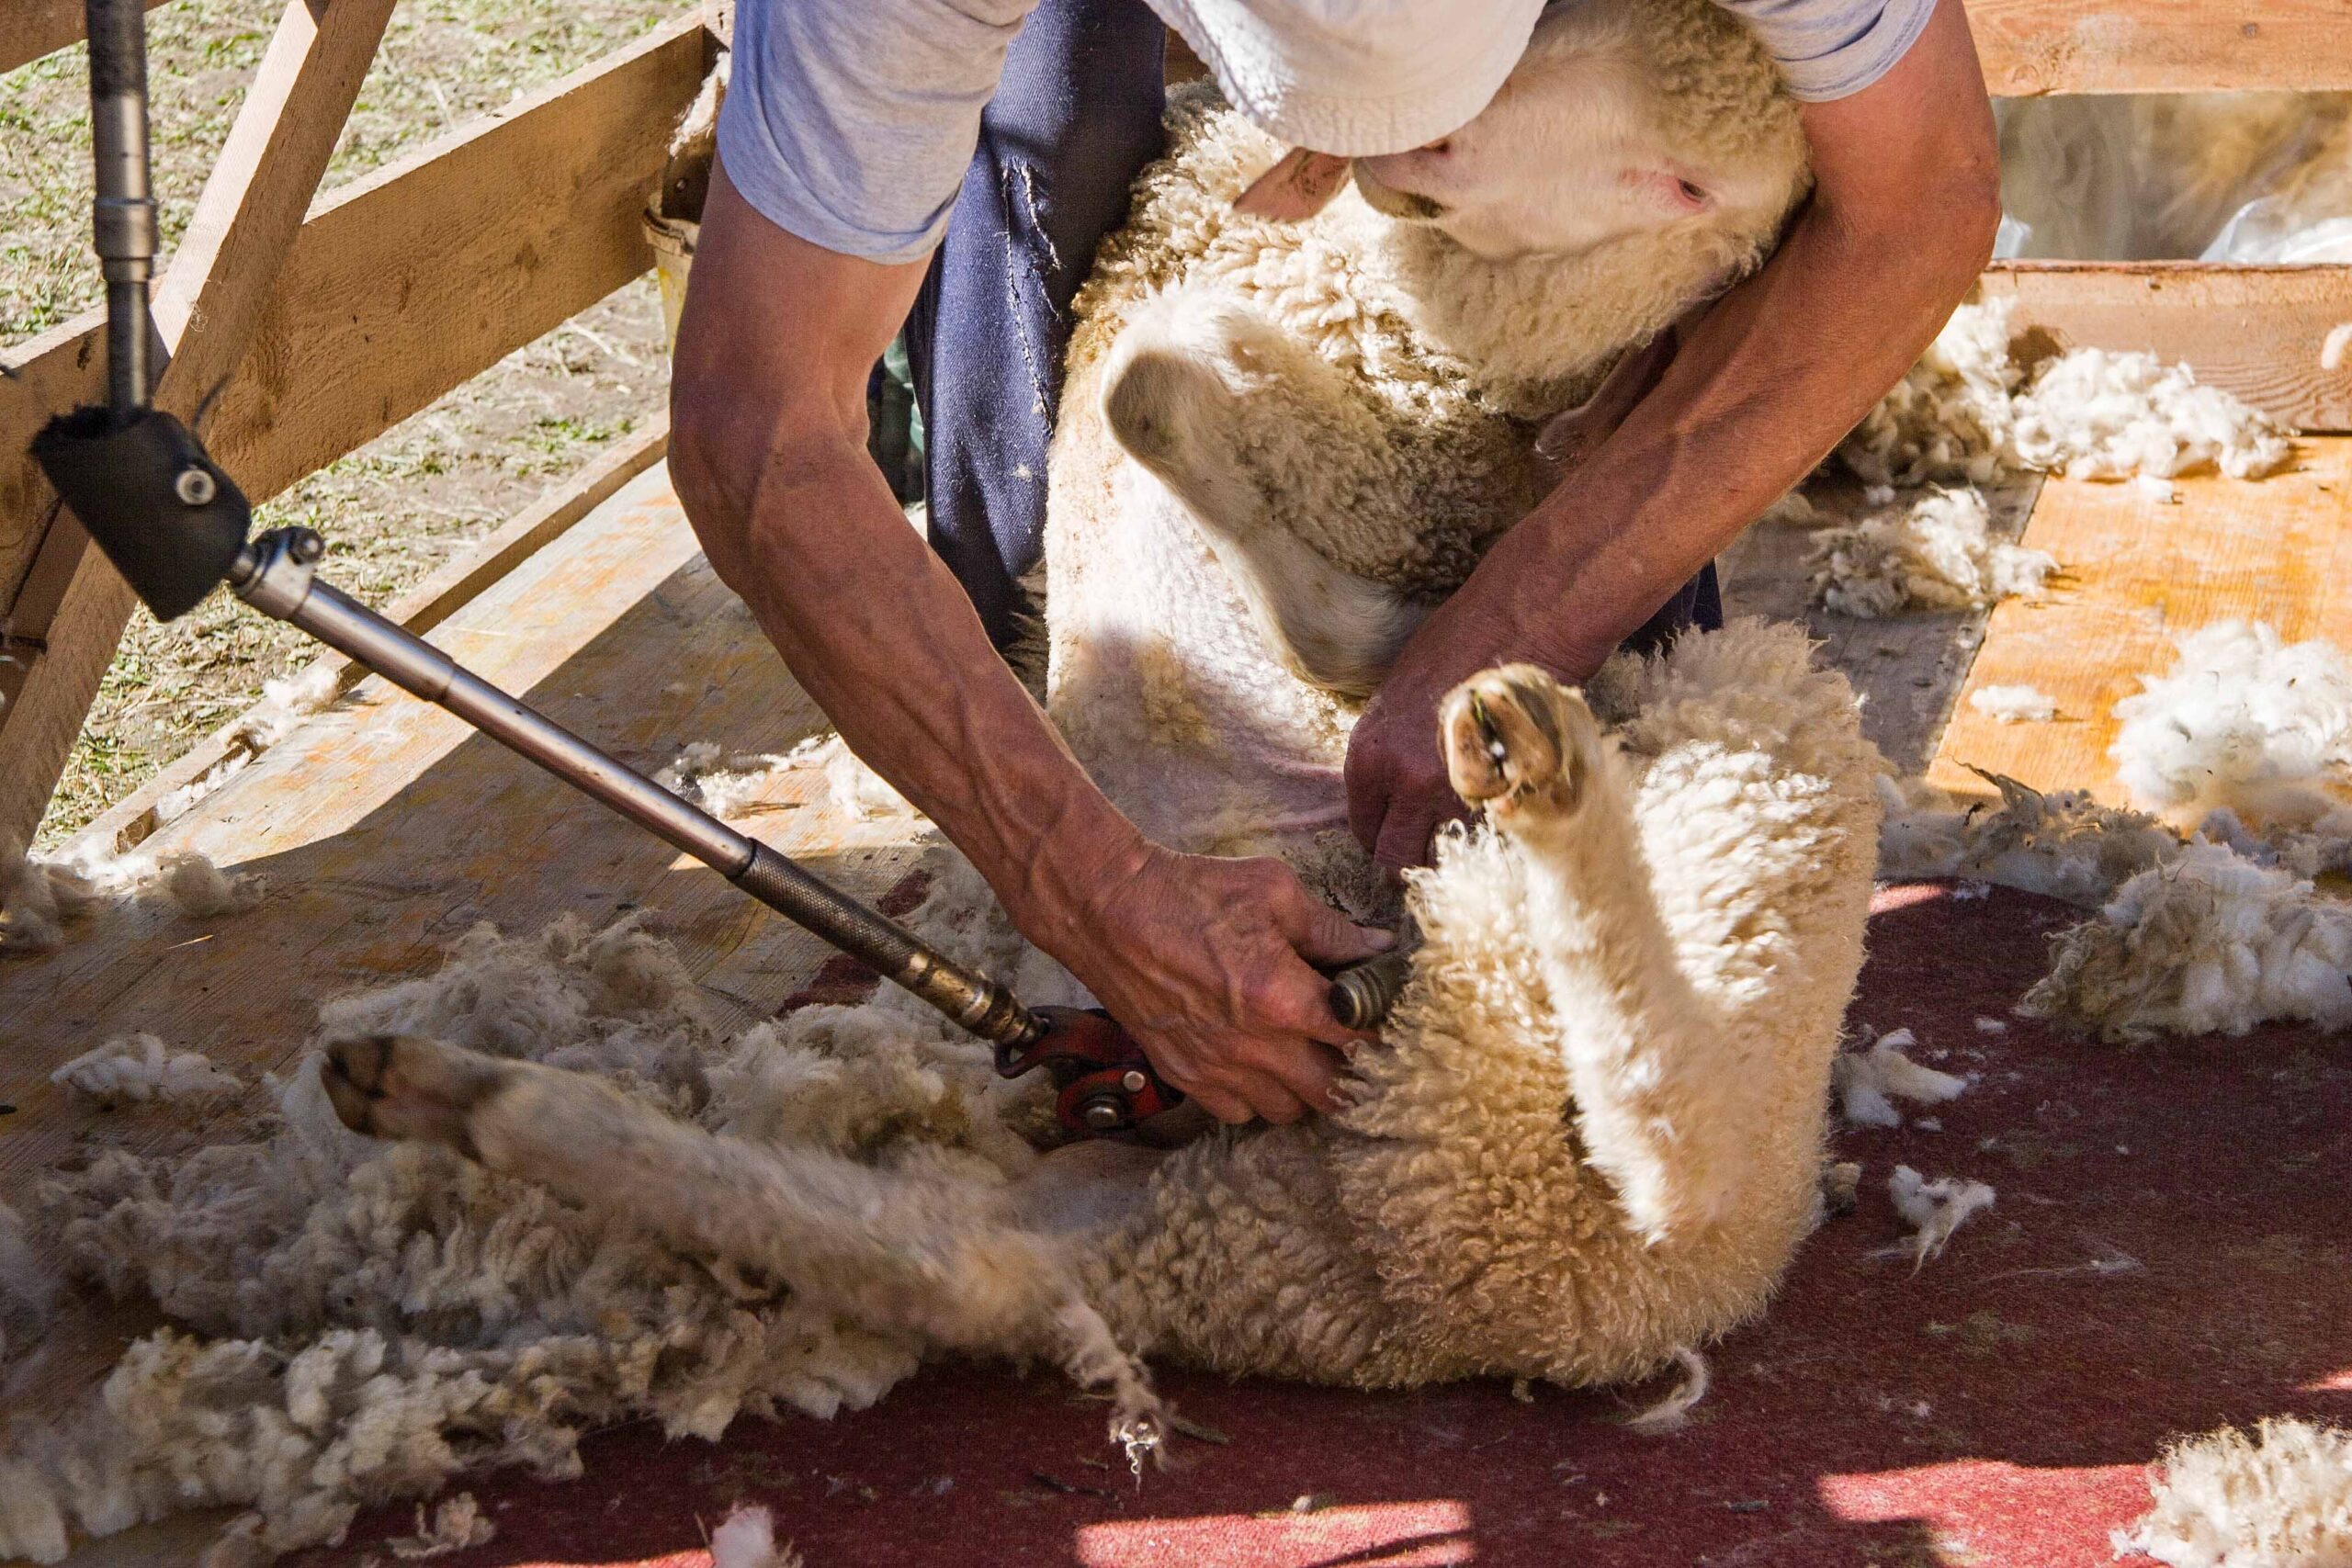 sheep shorn by the sheep farmer